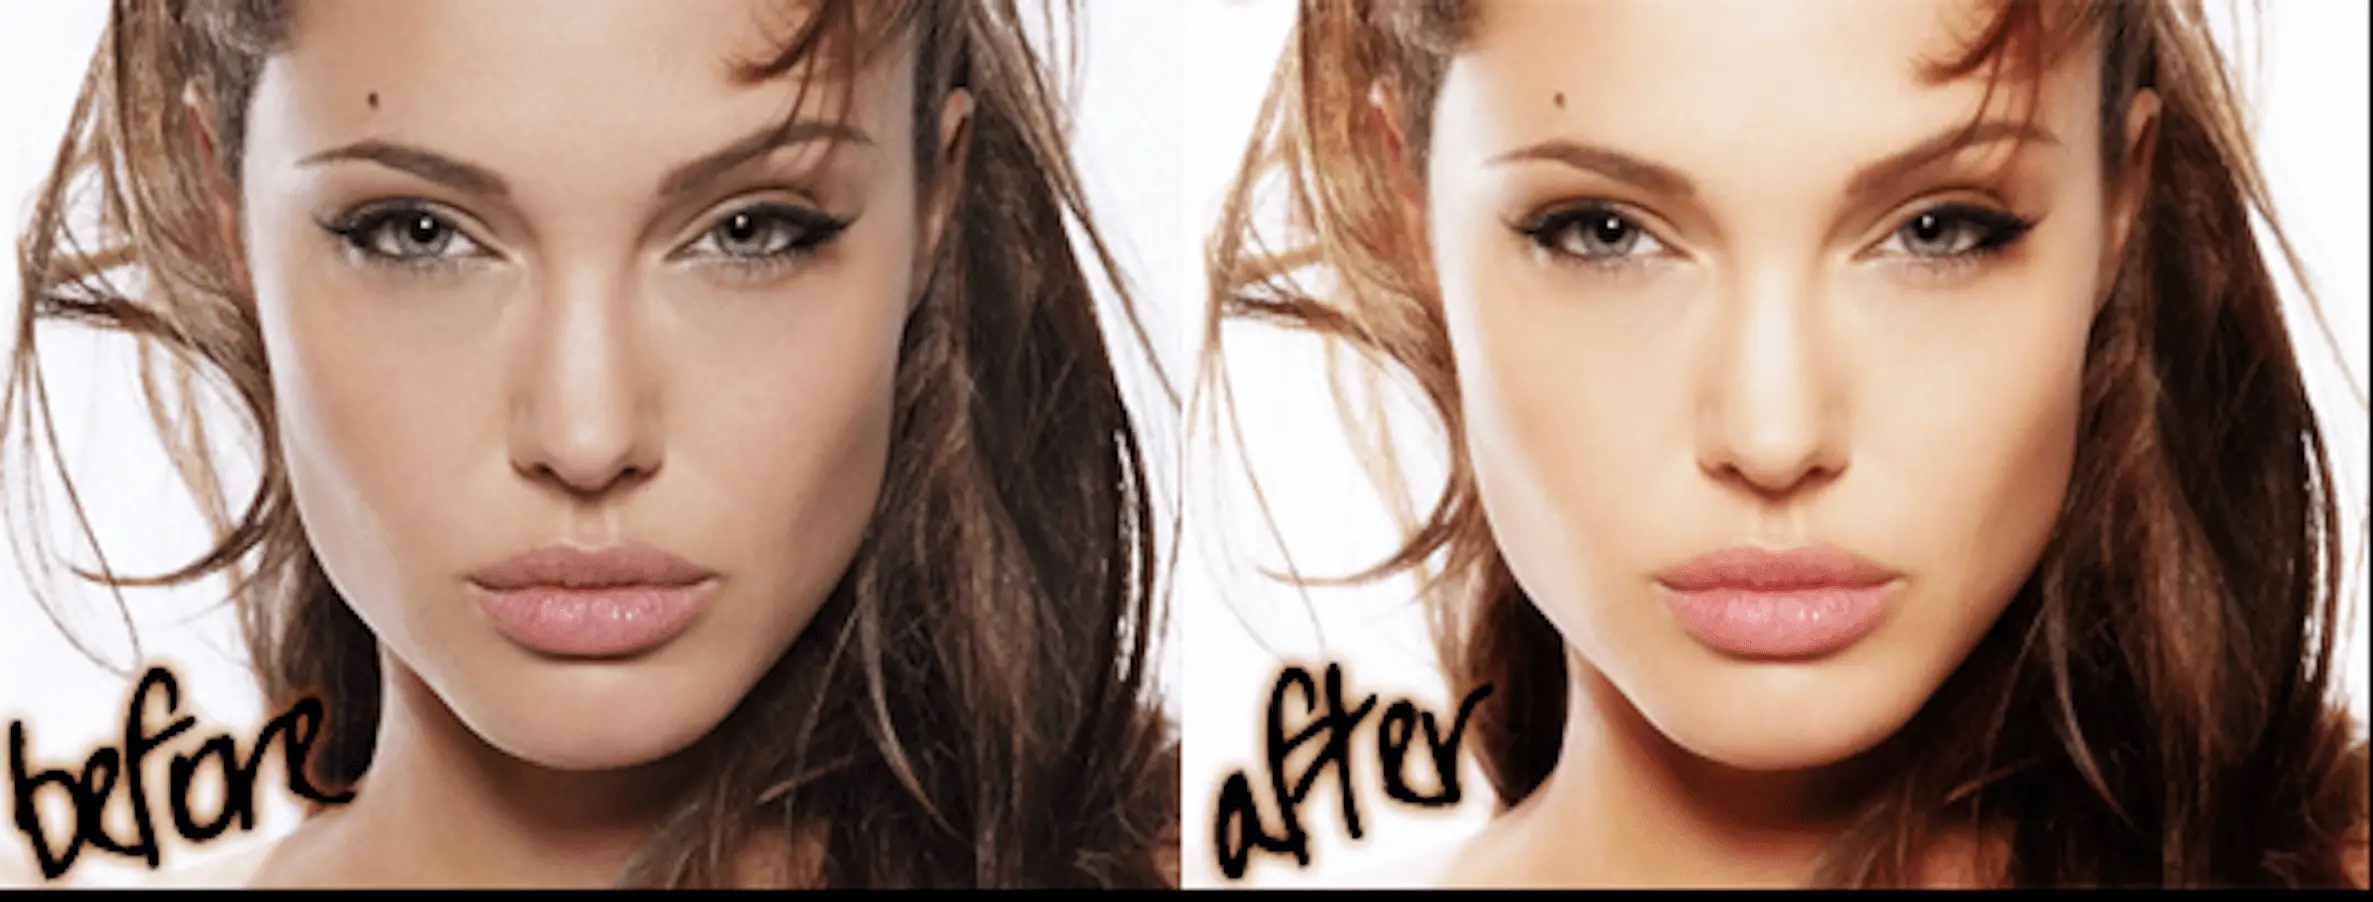 Skin Glow Enhancement ação gratuita do Photoshop mostrando antes e depois do rosto de uma mulher